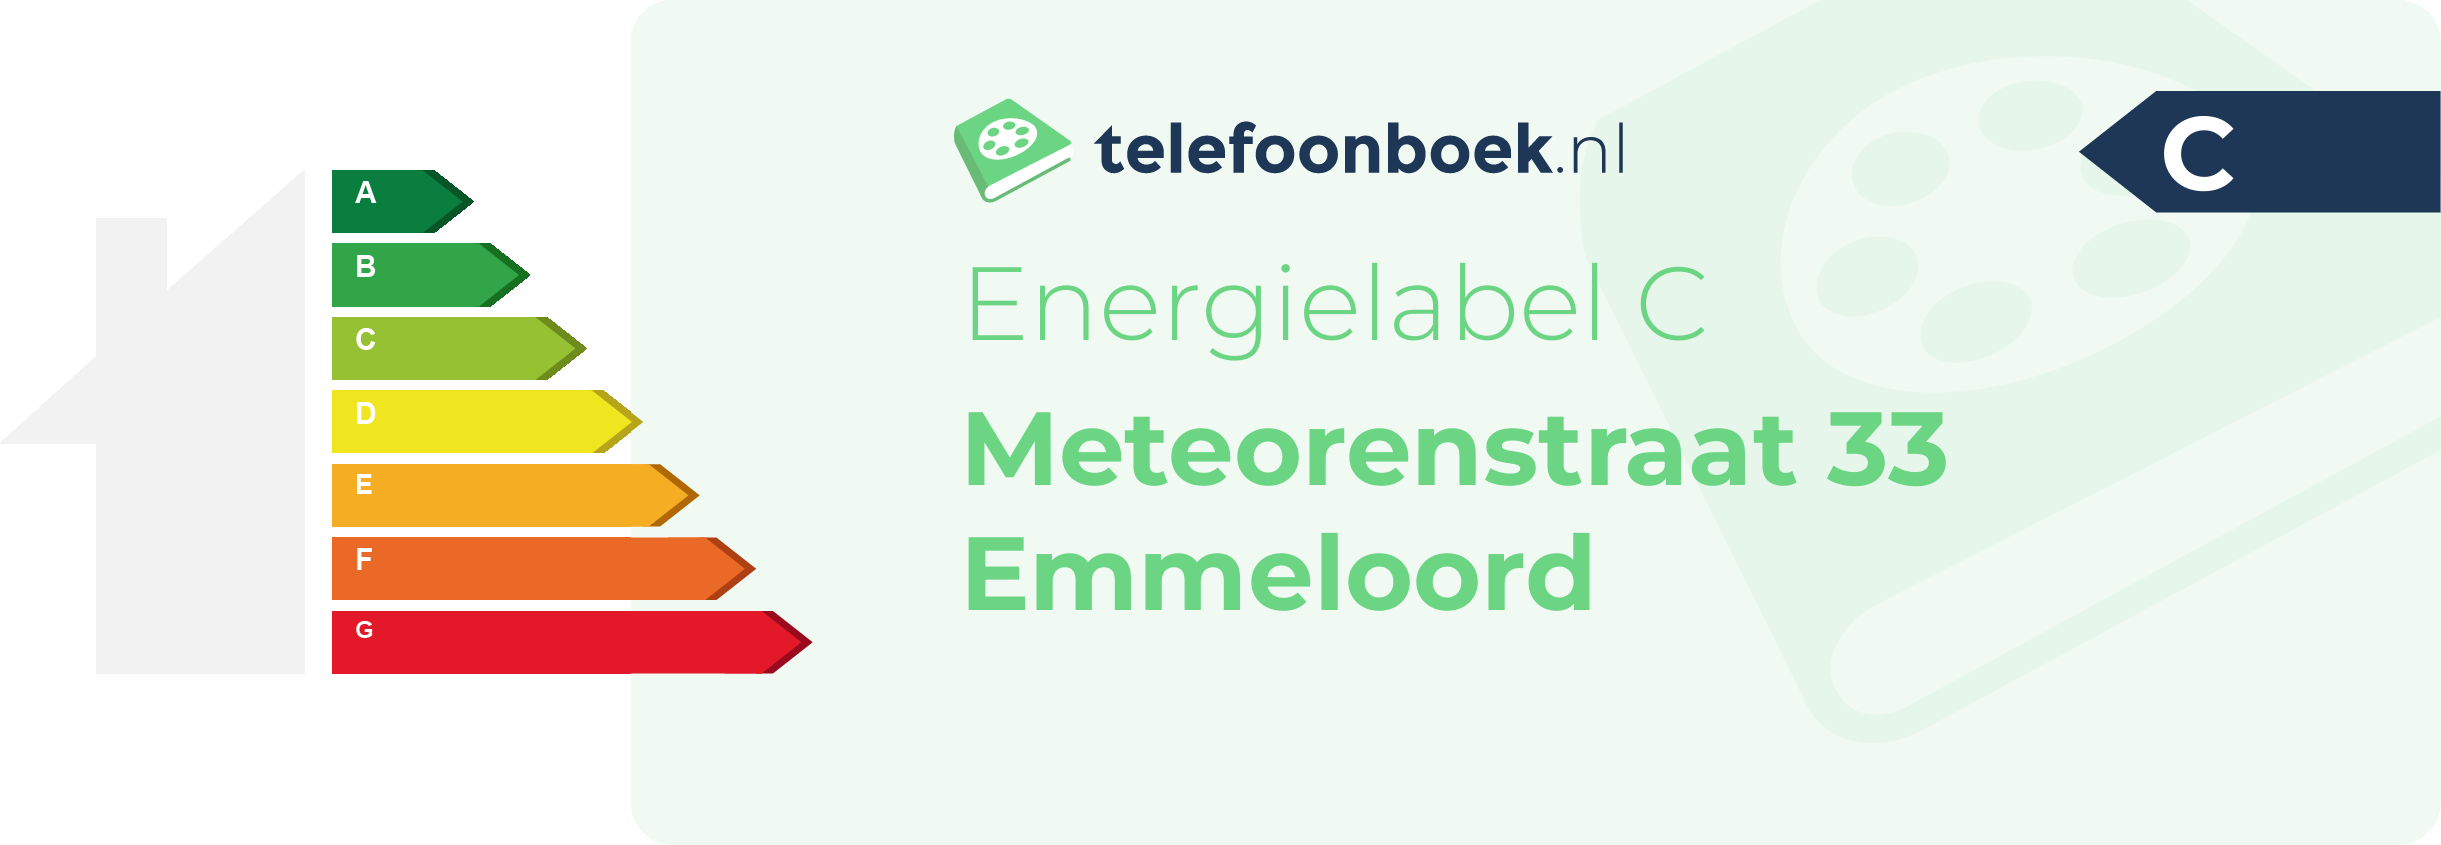 Energielabel Meteorenstraat 33 Emmeloord